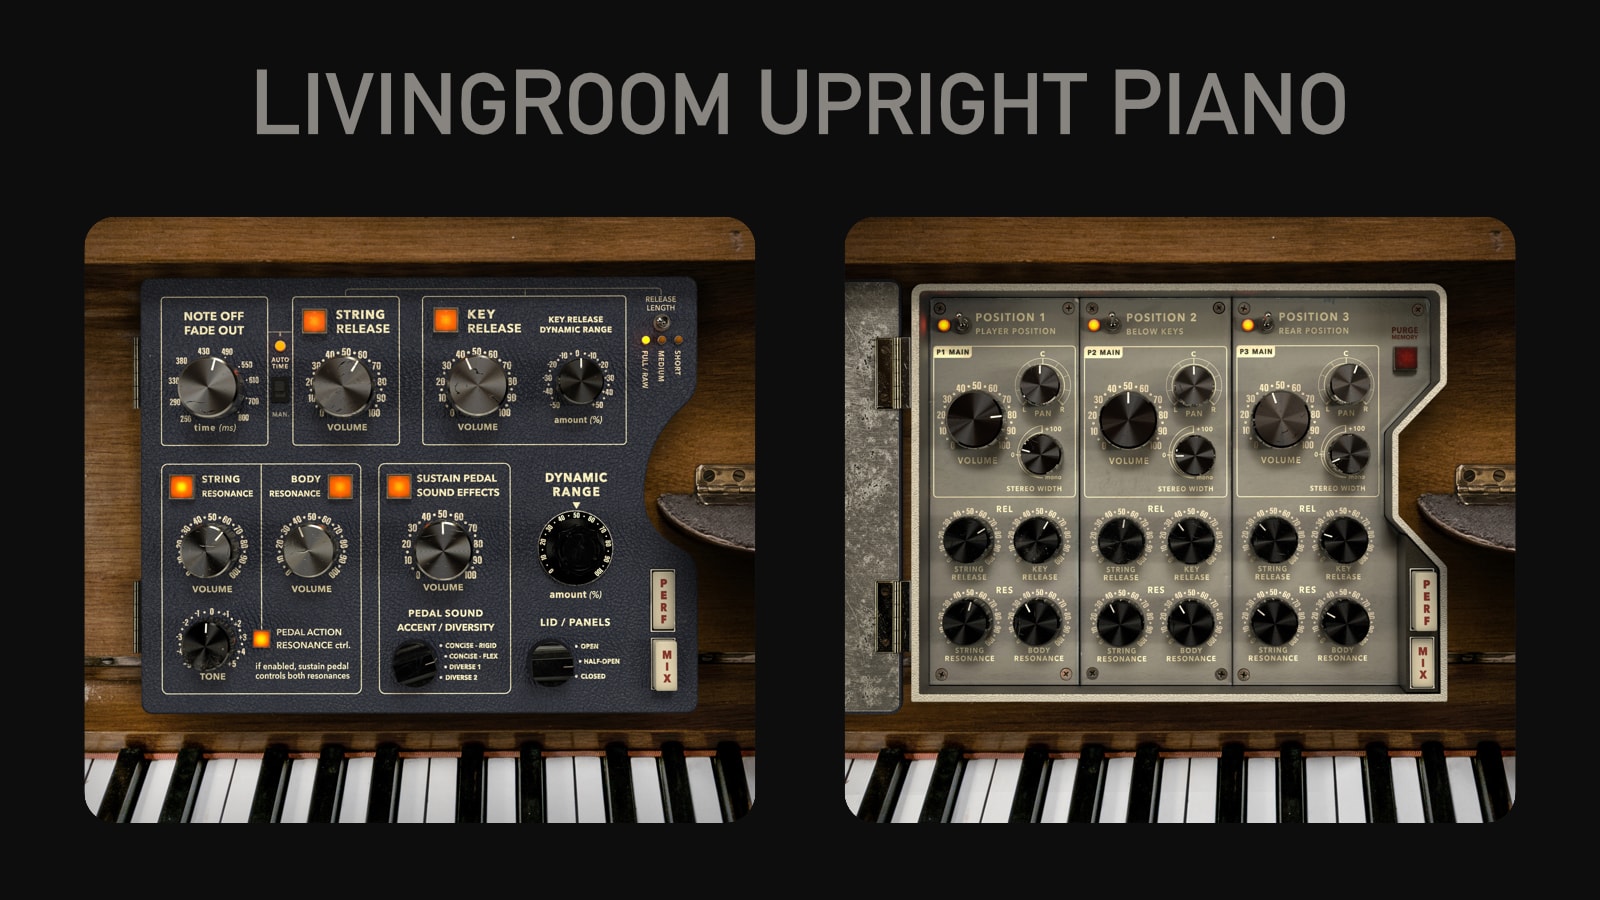 LivingRoom Upright Piano Complete edition released for Kontakt sampler